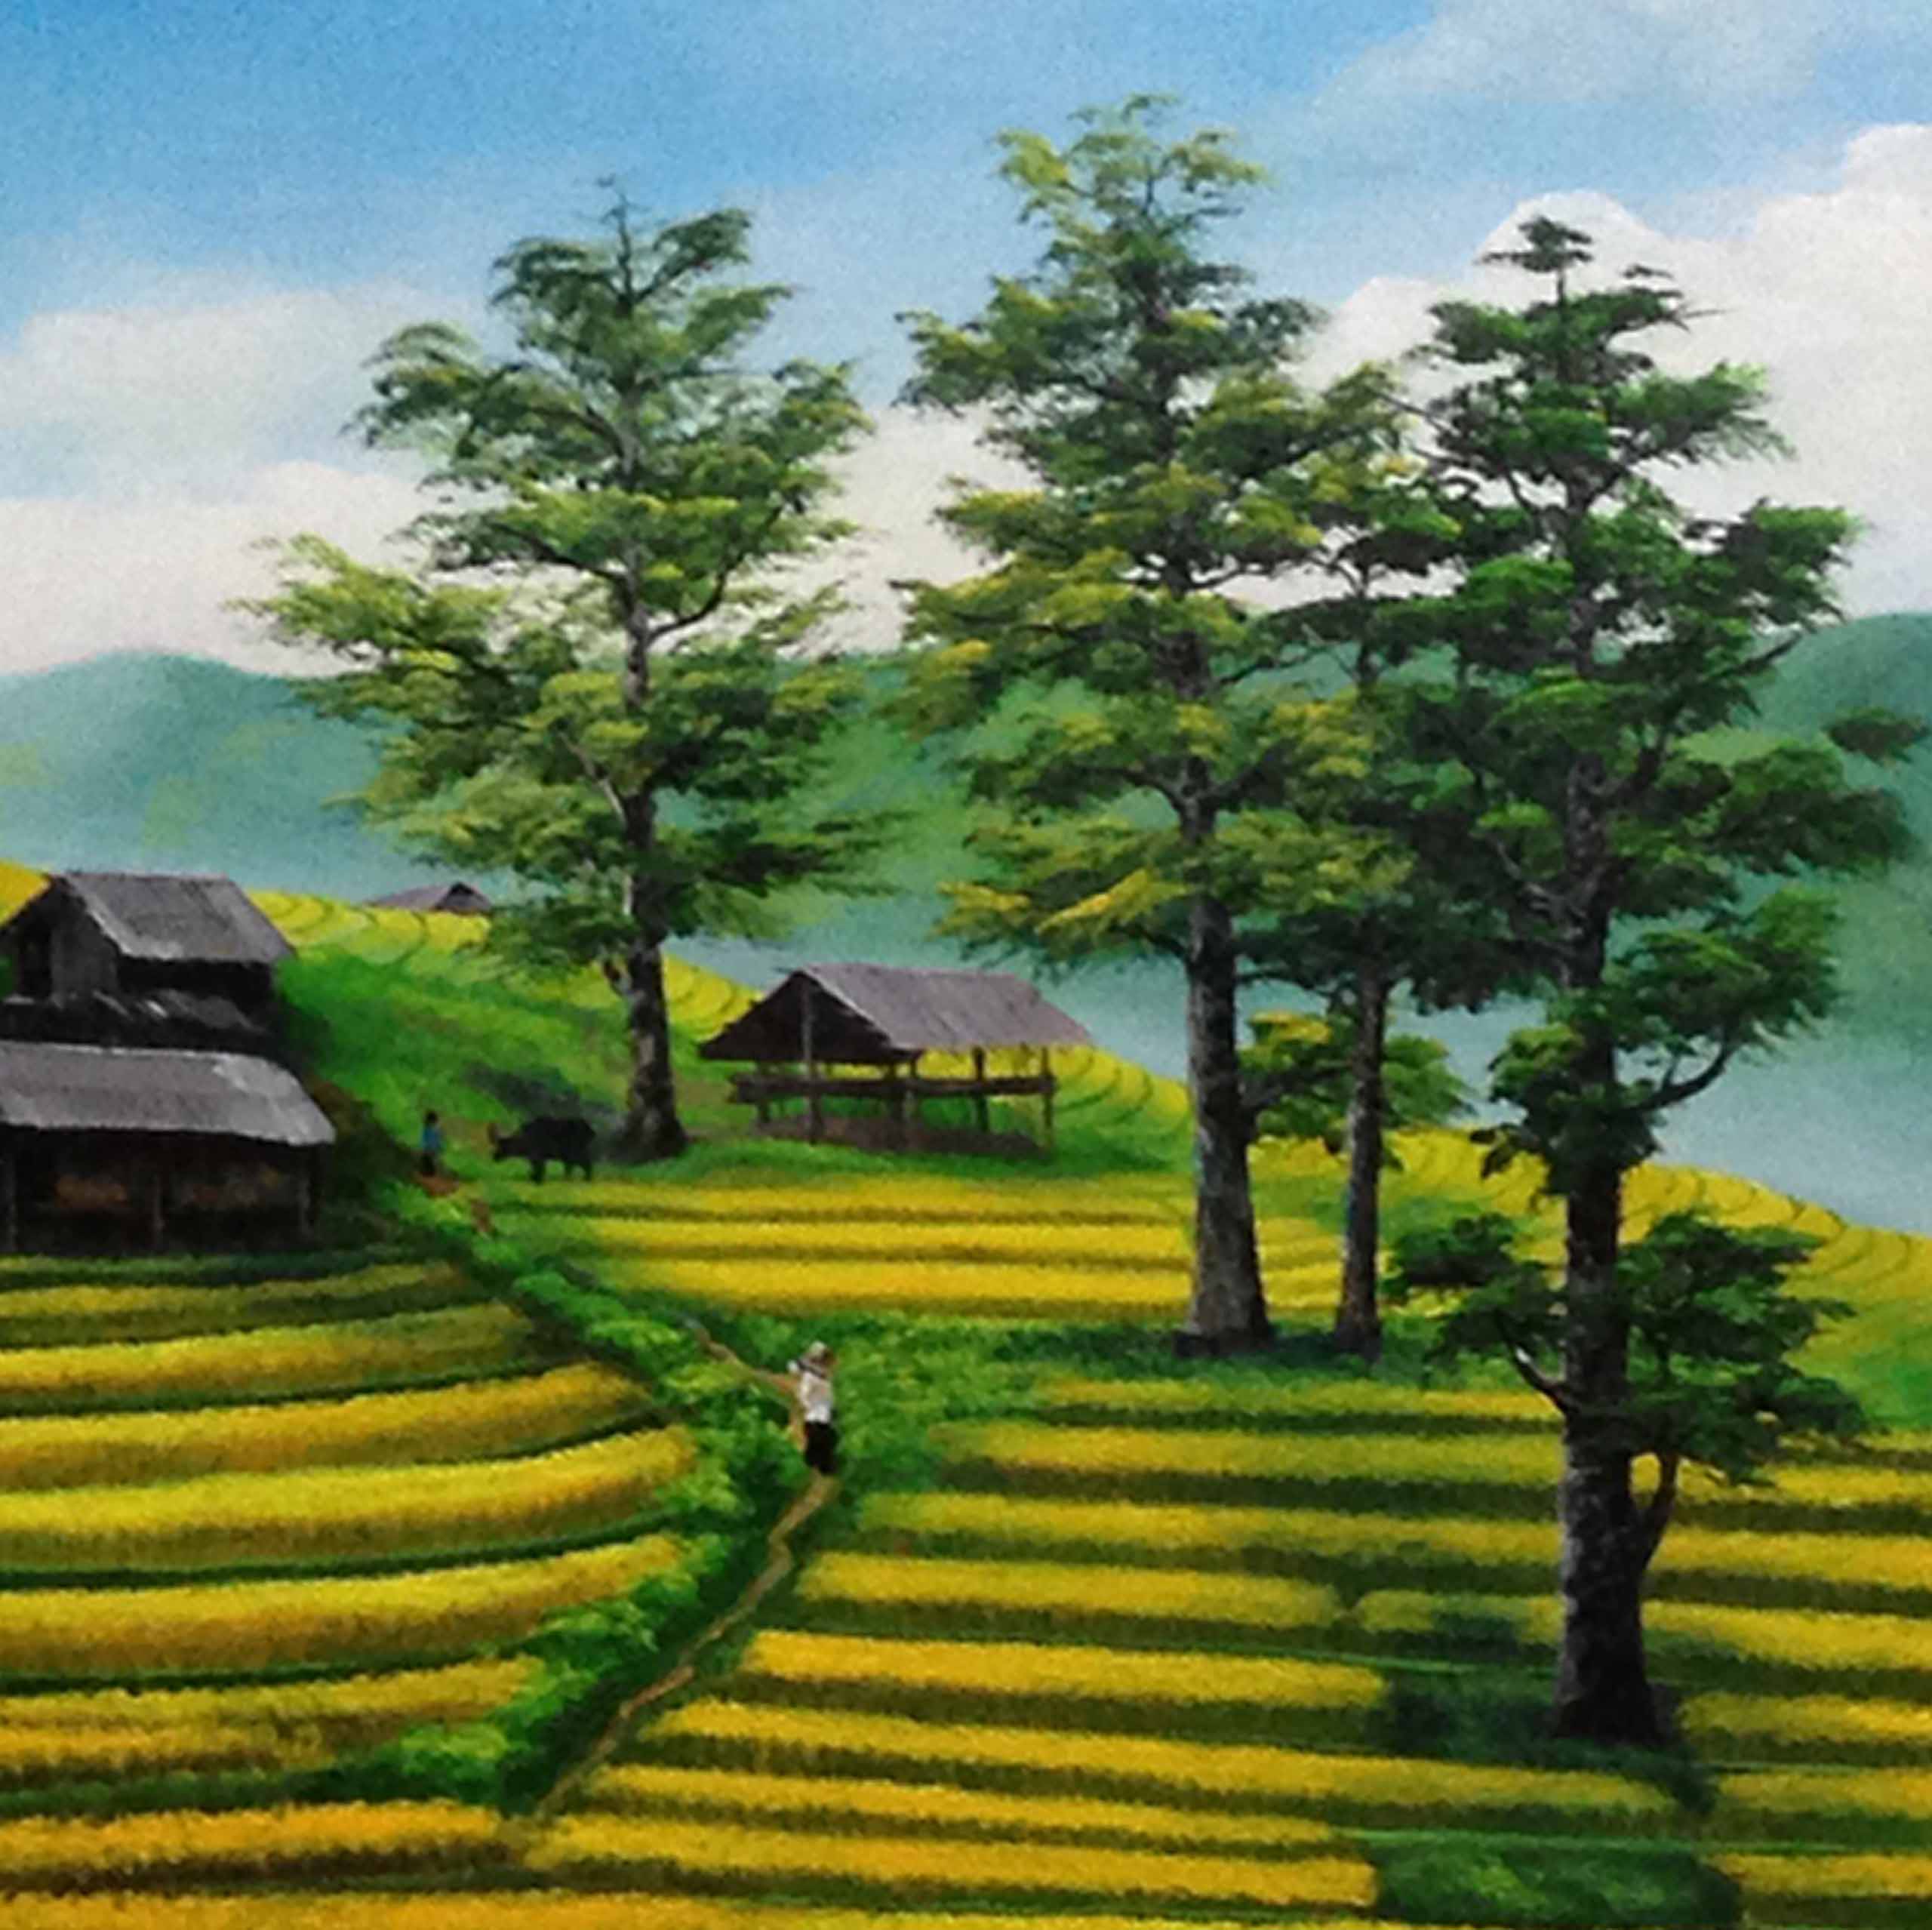 Tranh Sơn Dầu Phong Cảnh Tây Bắc Việt Nam - Tsd281Lhar - Lehais Art